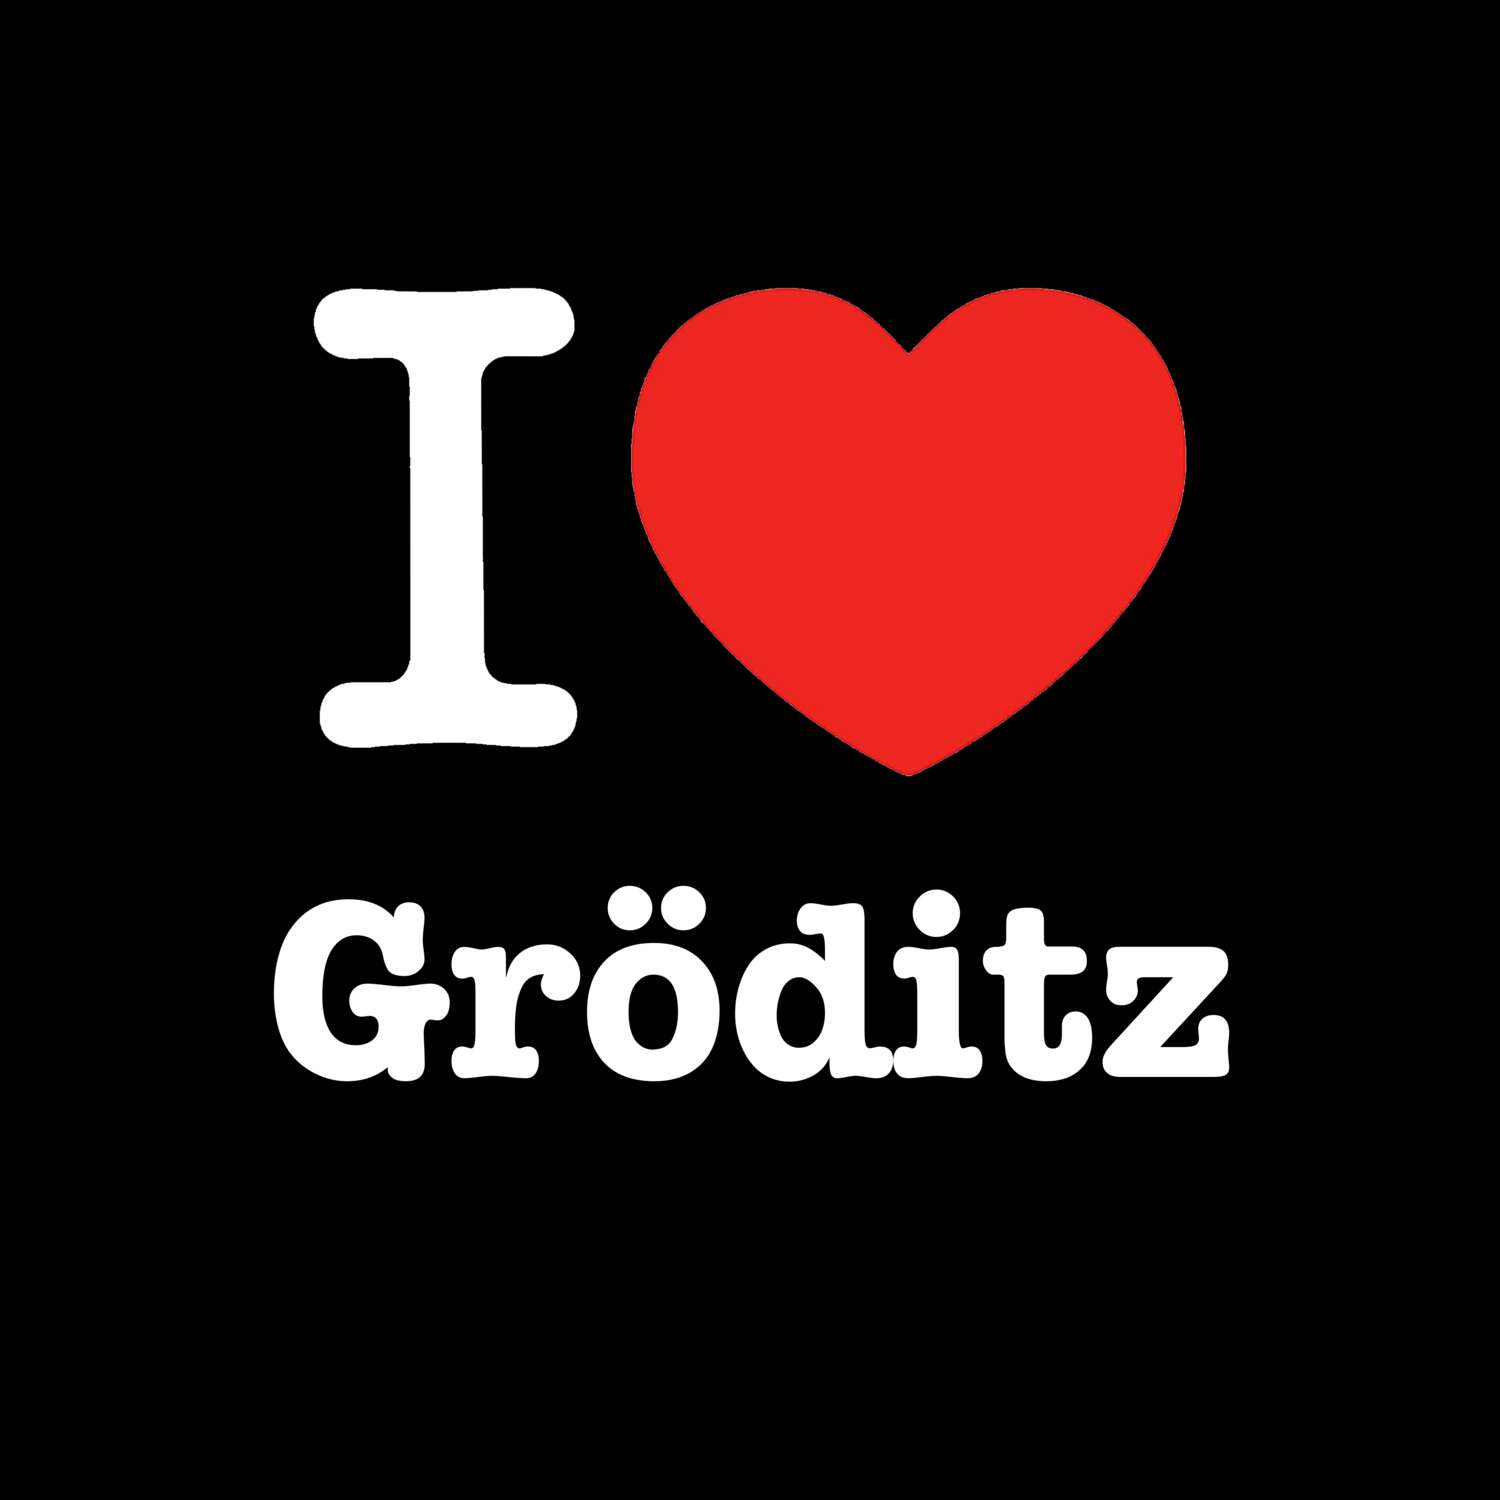 Gröditz T-Shirt »I love«